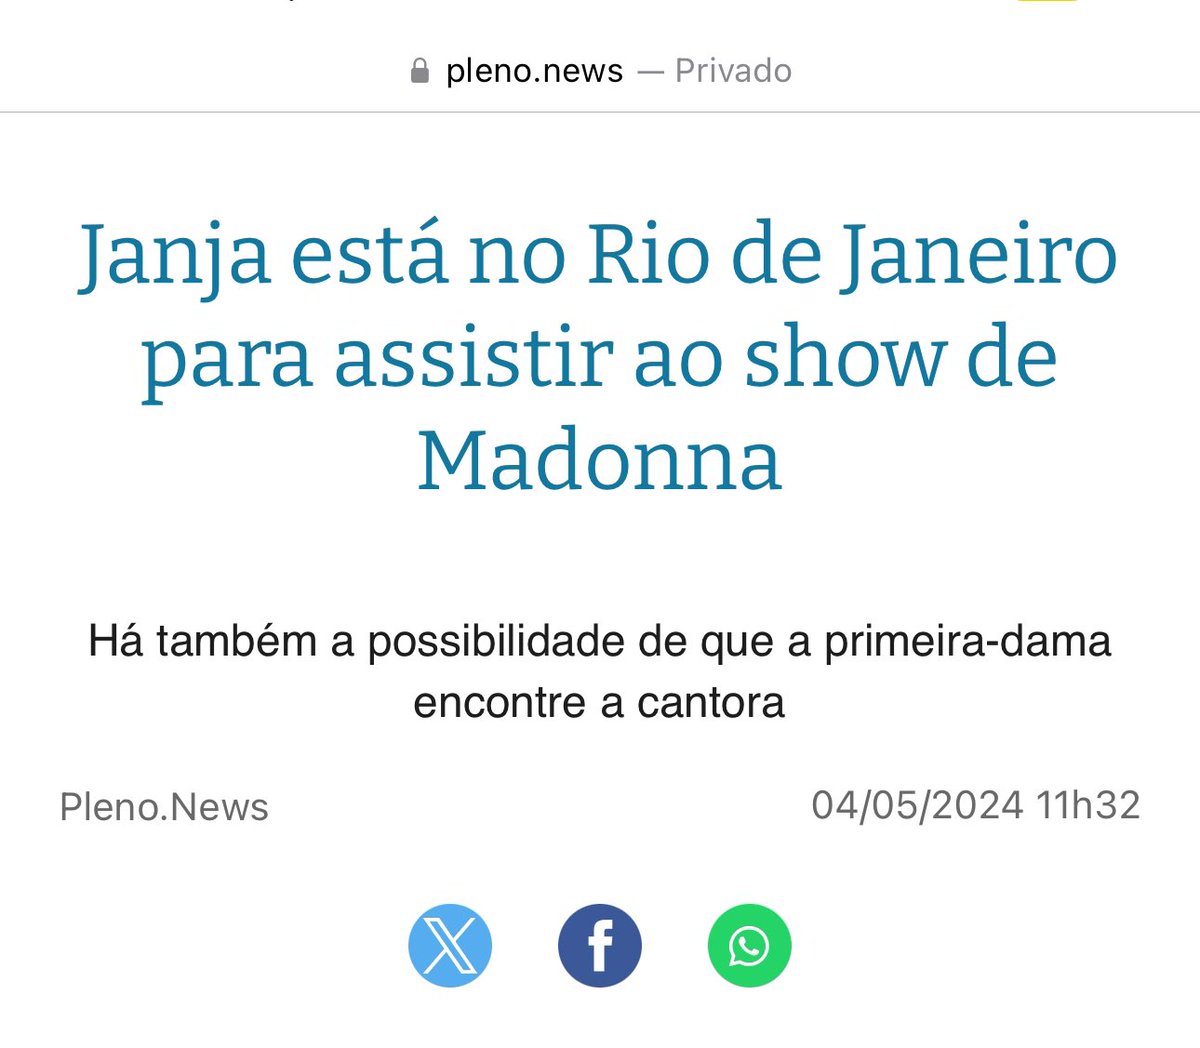 🚨ANOMALIAS DO BRASIL
A morte cruel do cachorrinho no voo da gol, deixou Janja abalada. 
Mas a tragédia do Rio Grande do Sul a faz ir ao show de Madonna no Rio.